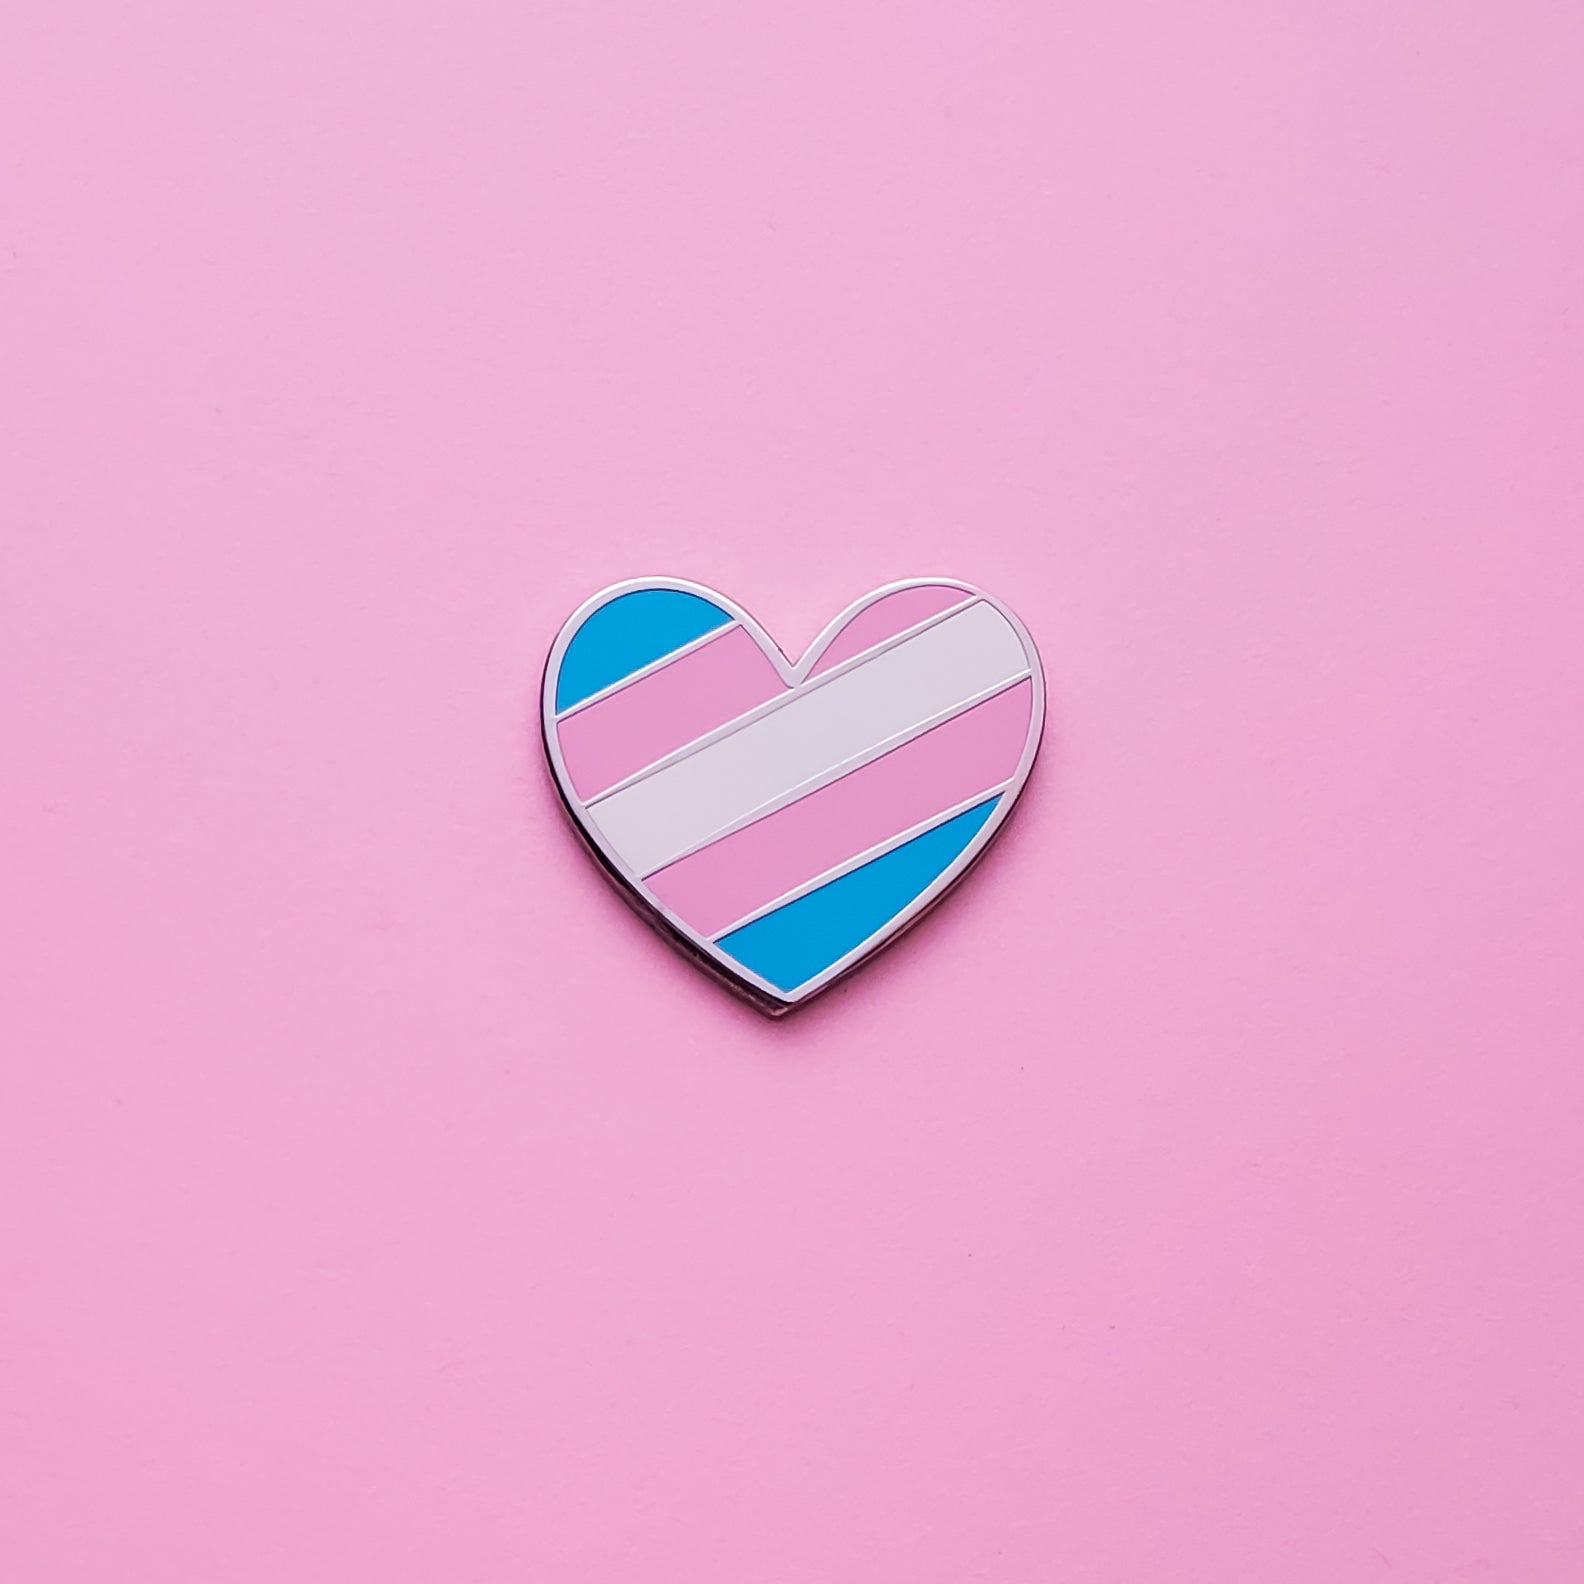 Pin on Transgender